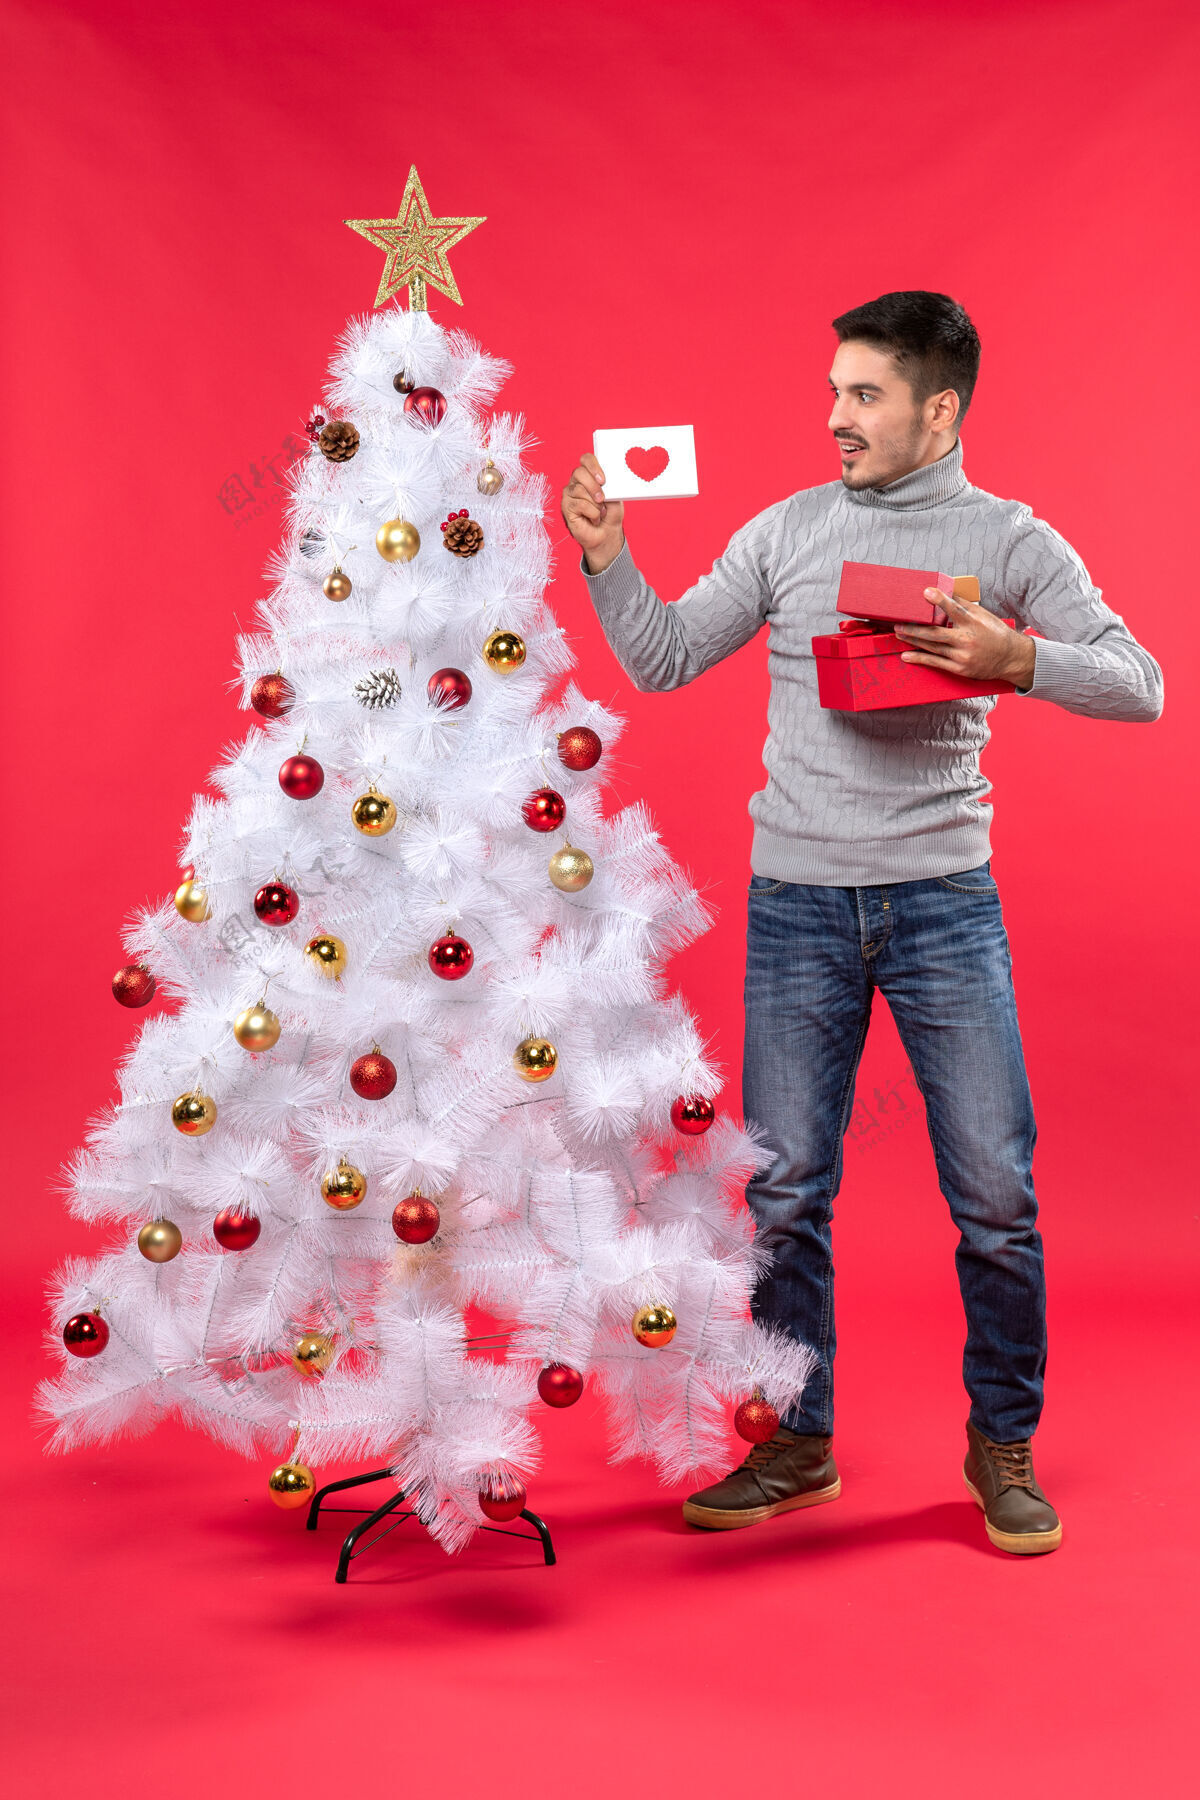 年轻人俯视图：穿着灰色上衣的年轻人站在装饰过的白色圣诞树旁 手里拿着红色的礼物衣服睡衣站立